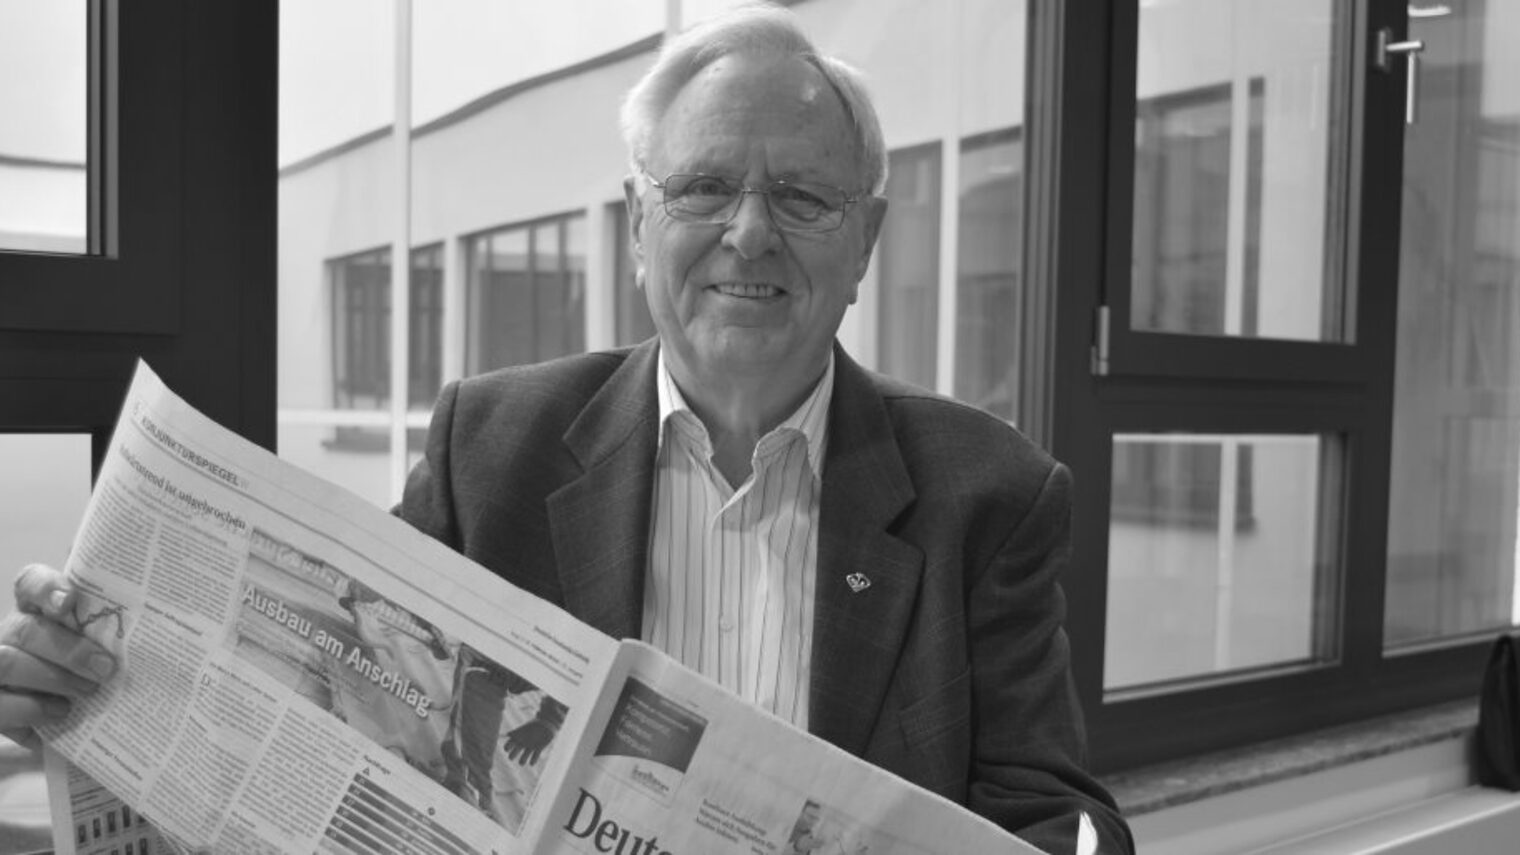 Älterer Mann mit Brille sitzt vor Fenster mit einer Zeitung in der Hand, dargestellt in schwarz-weiß.